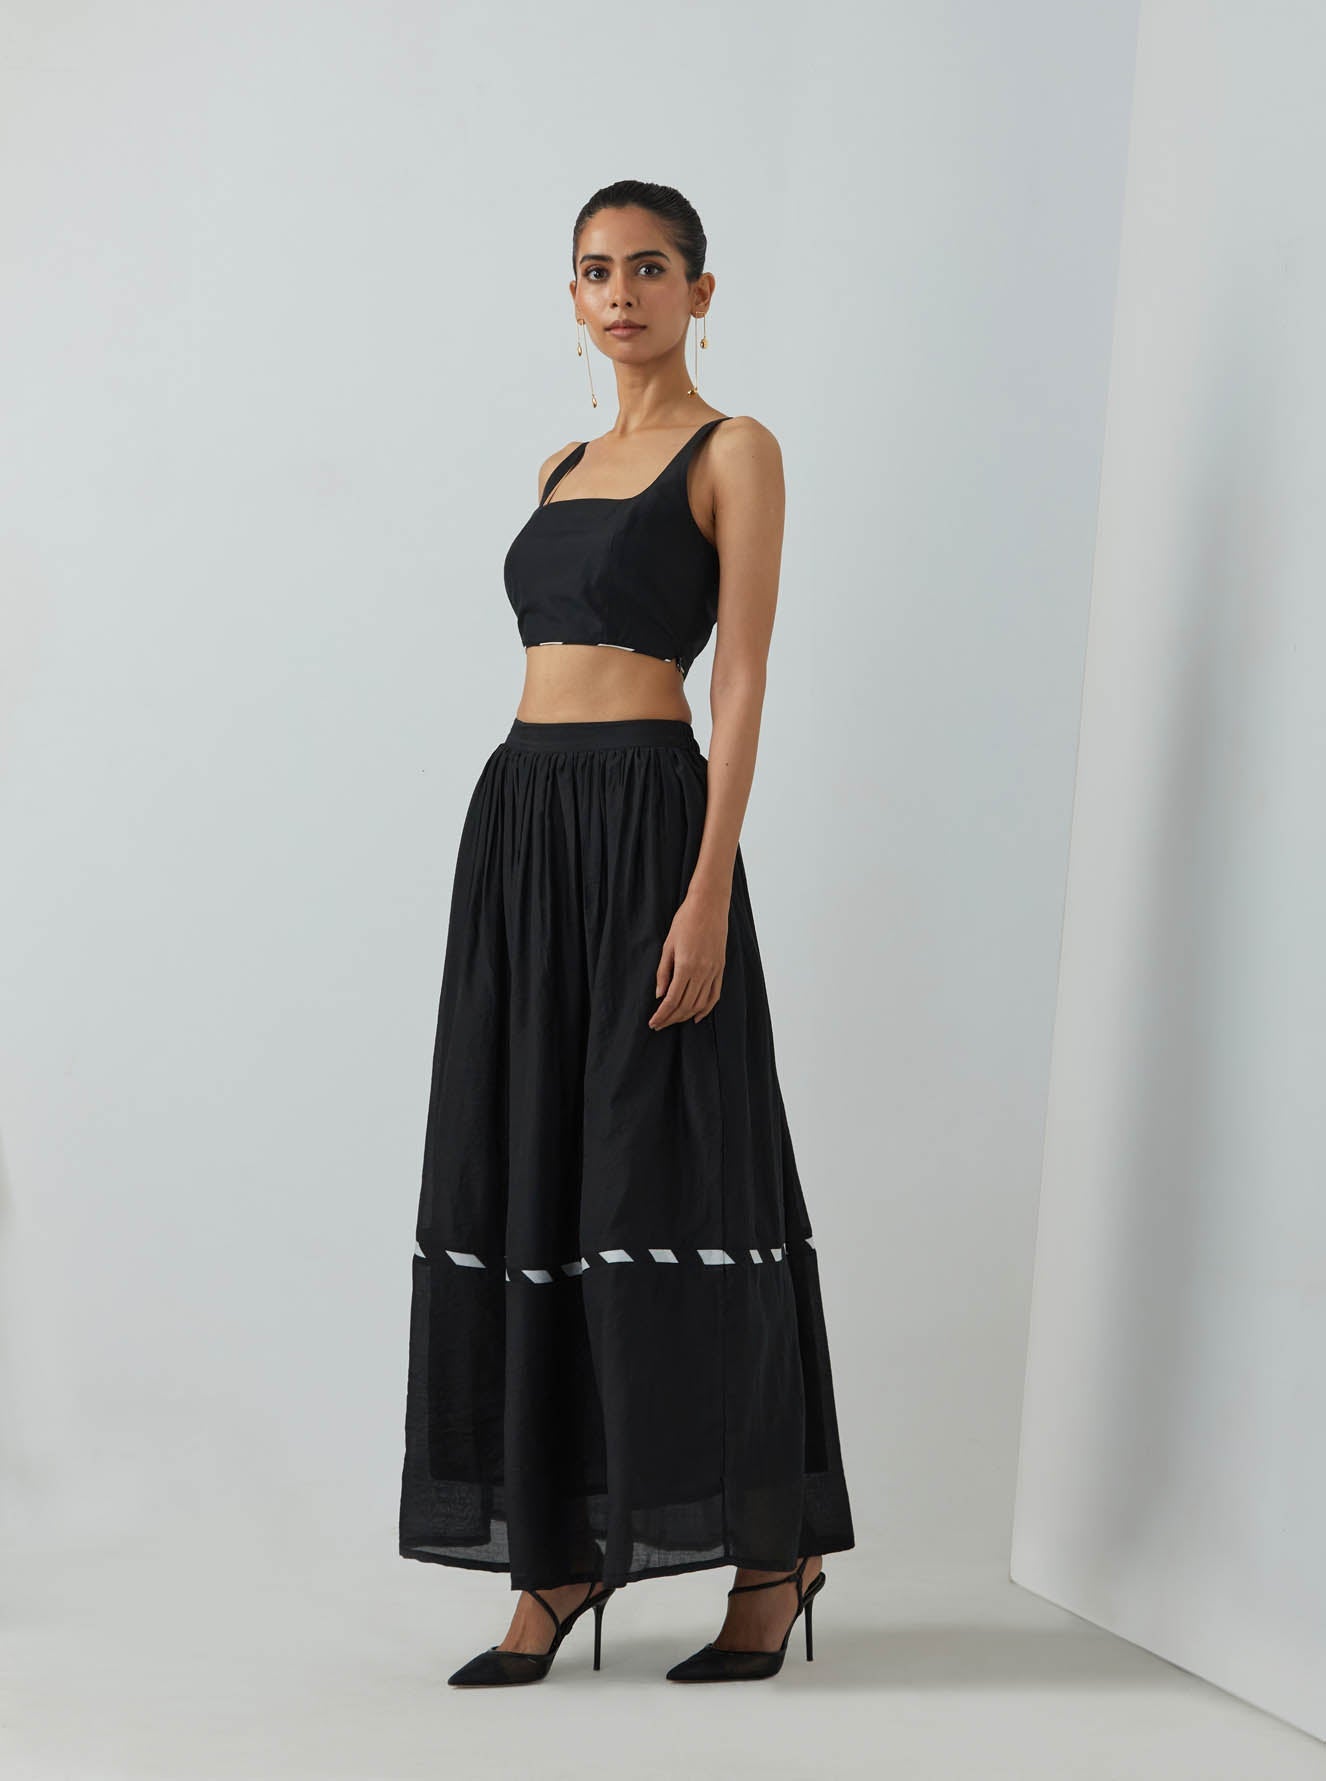 Black Chanderi Full Length Skirt - The Indian Cause